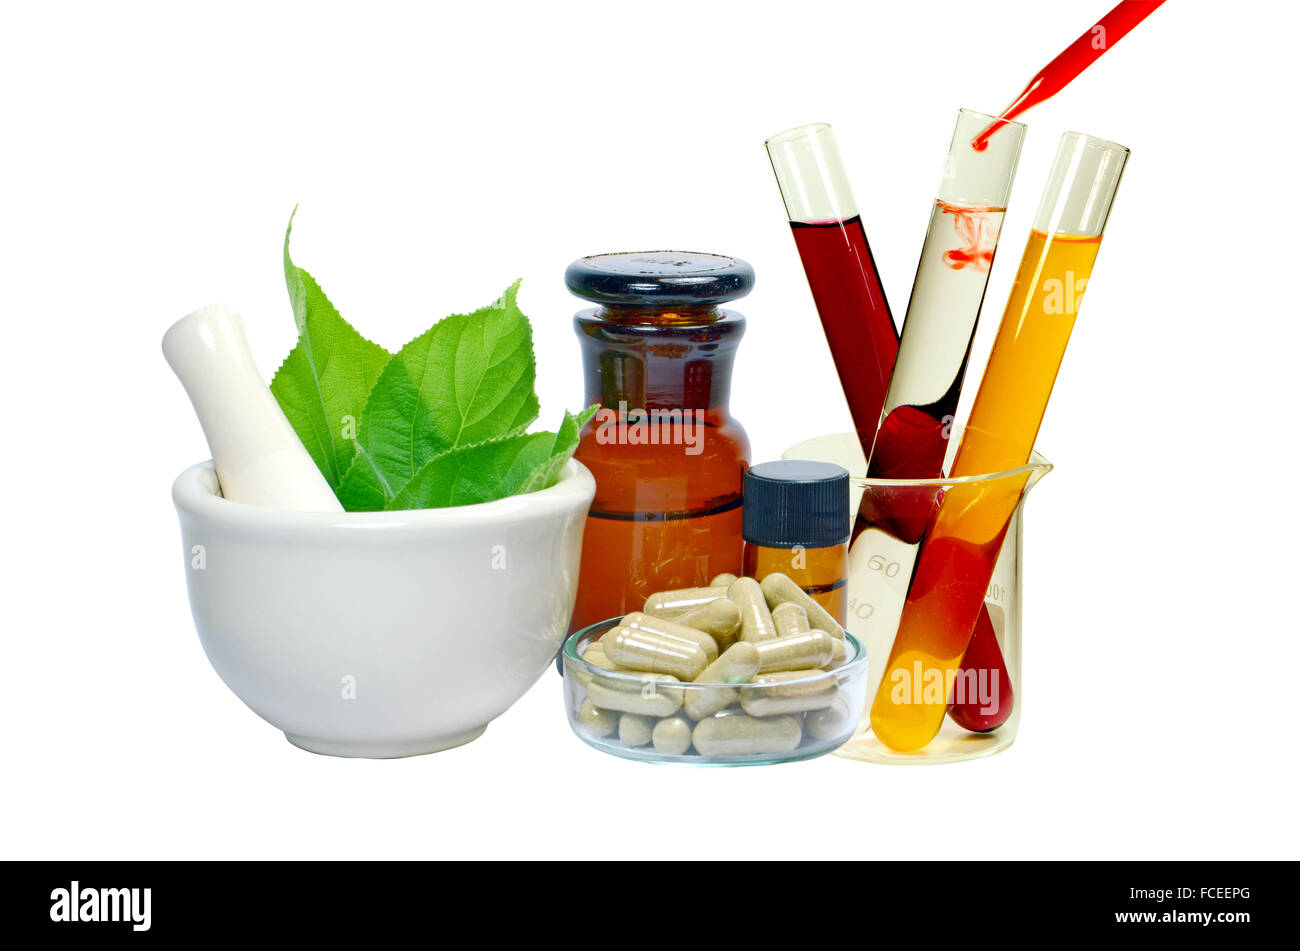 Kräutermedizin Produkte und Medizin Grinder isoliert auf weißem Hintergrund in der Medizin vom Naturprodukt Konzept. Stockfoto